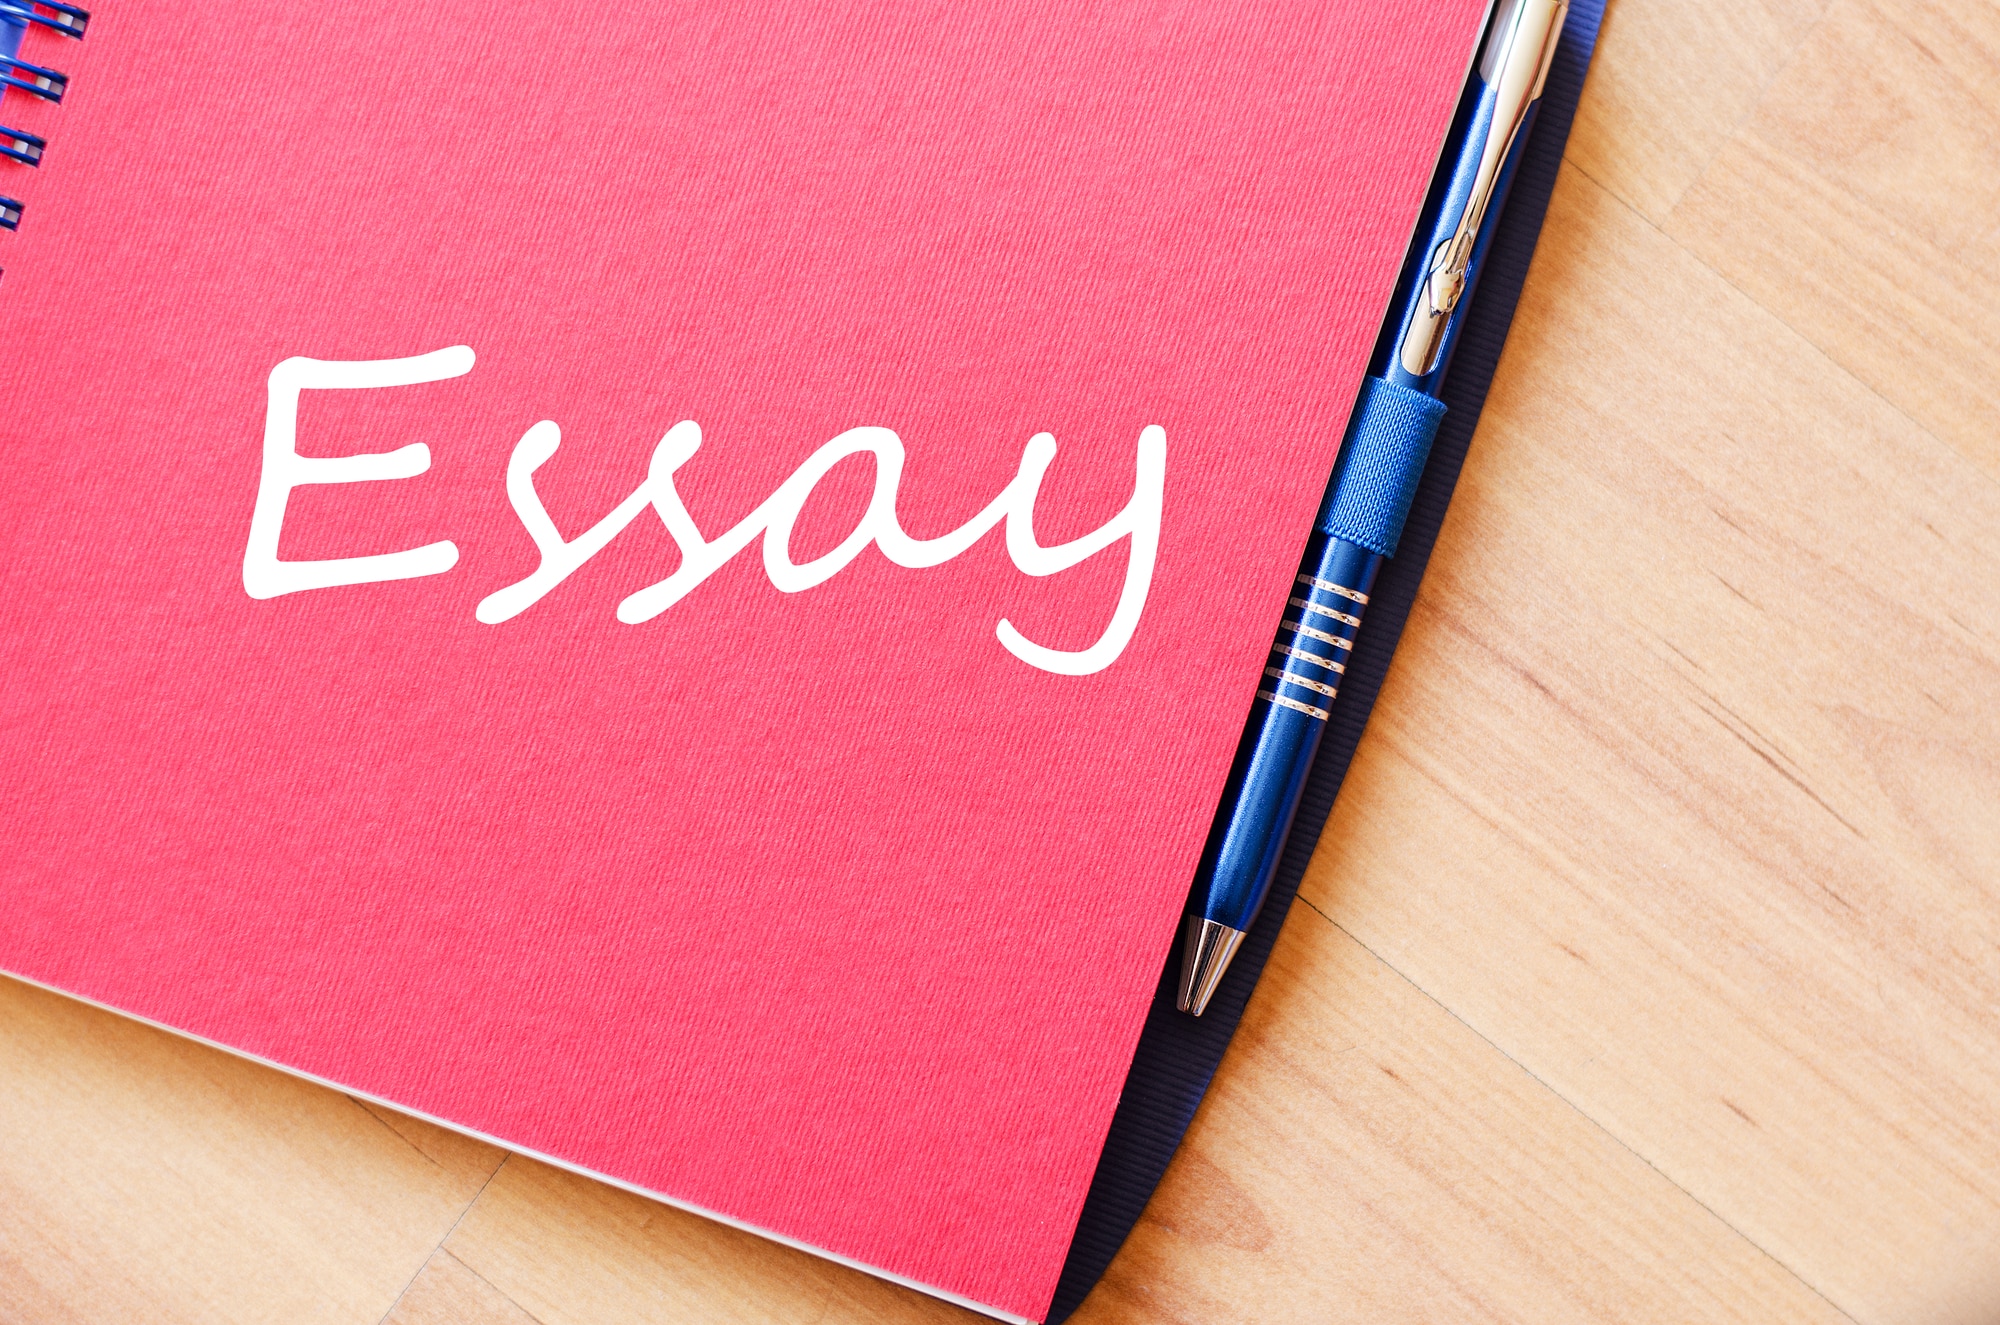 how many types of essay